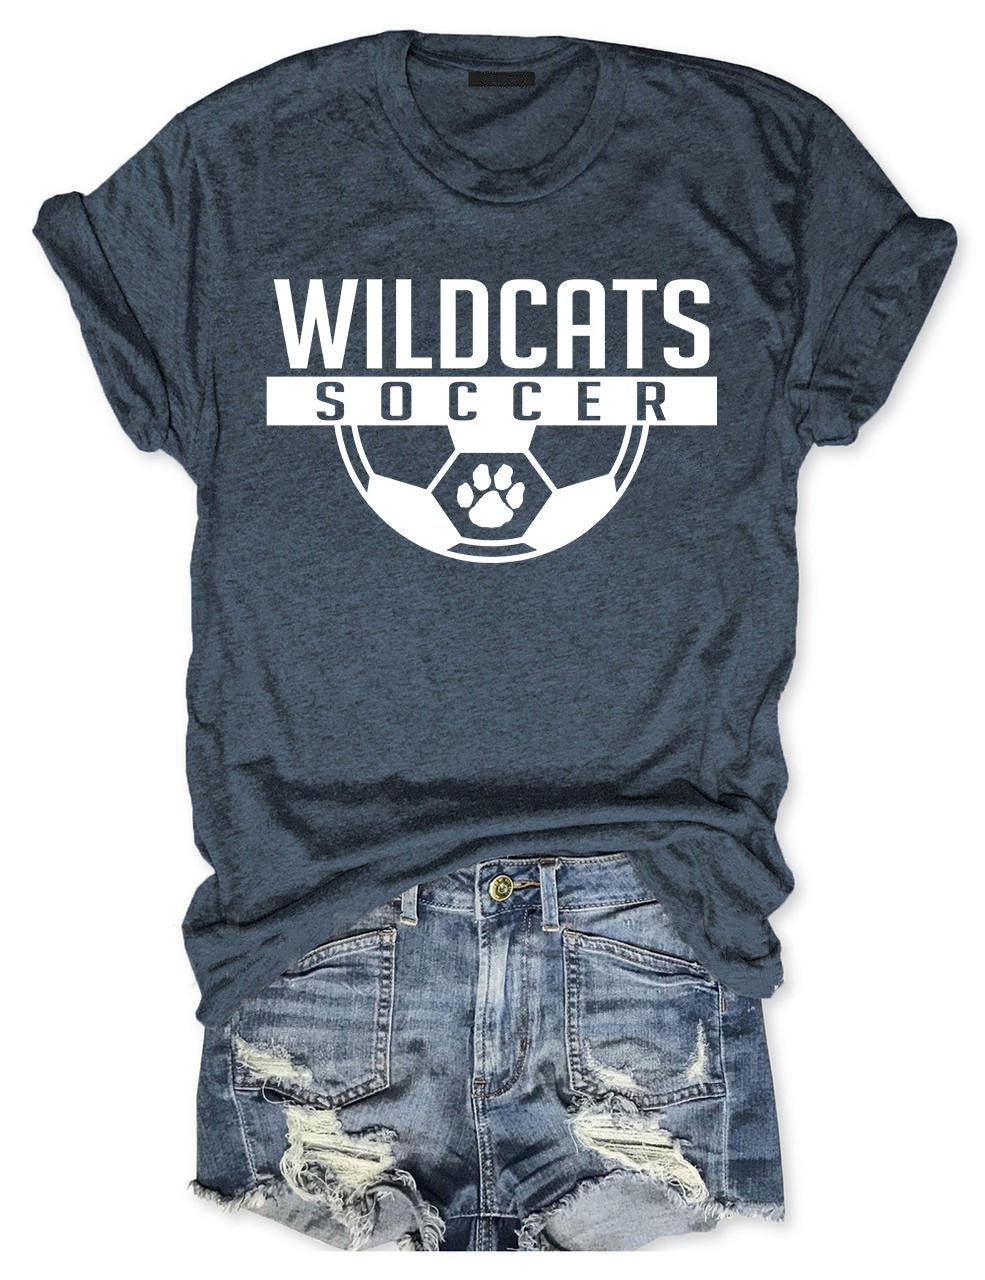 Wildcat Soccer T-shirt